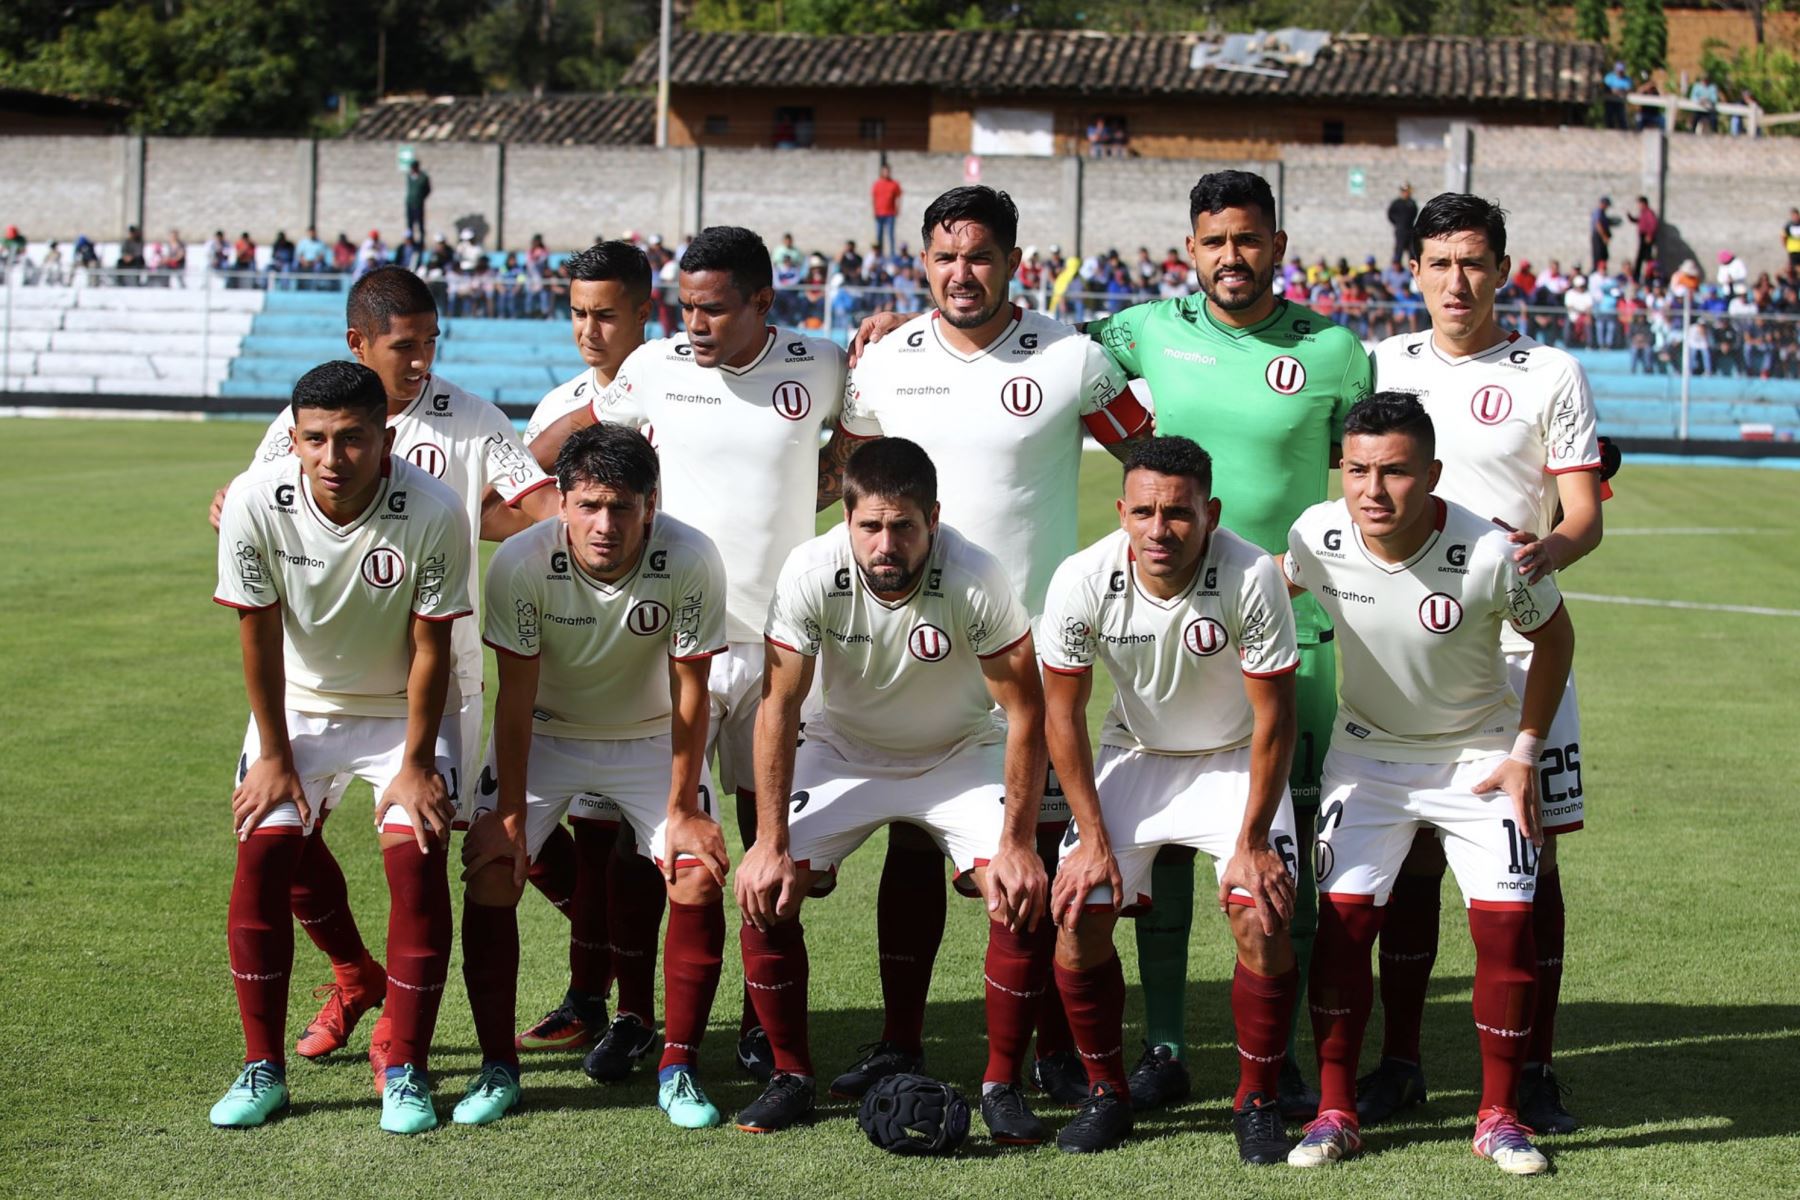 Universitario igualó 1-1 al UTC, por la 2da fecha del Torneo Apertura 2018, en Cajabamba. Foto:Twiter